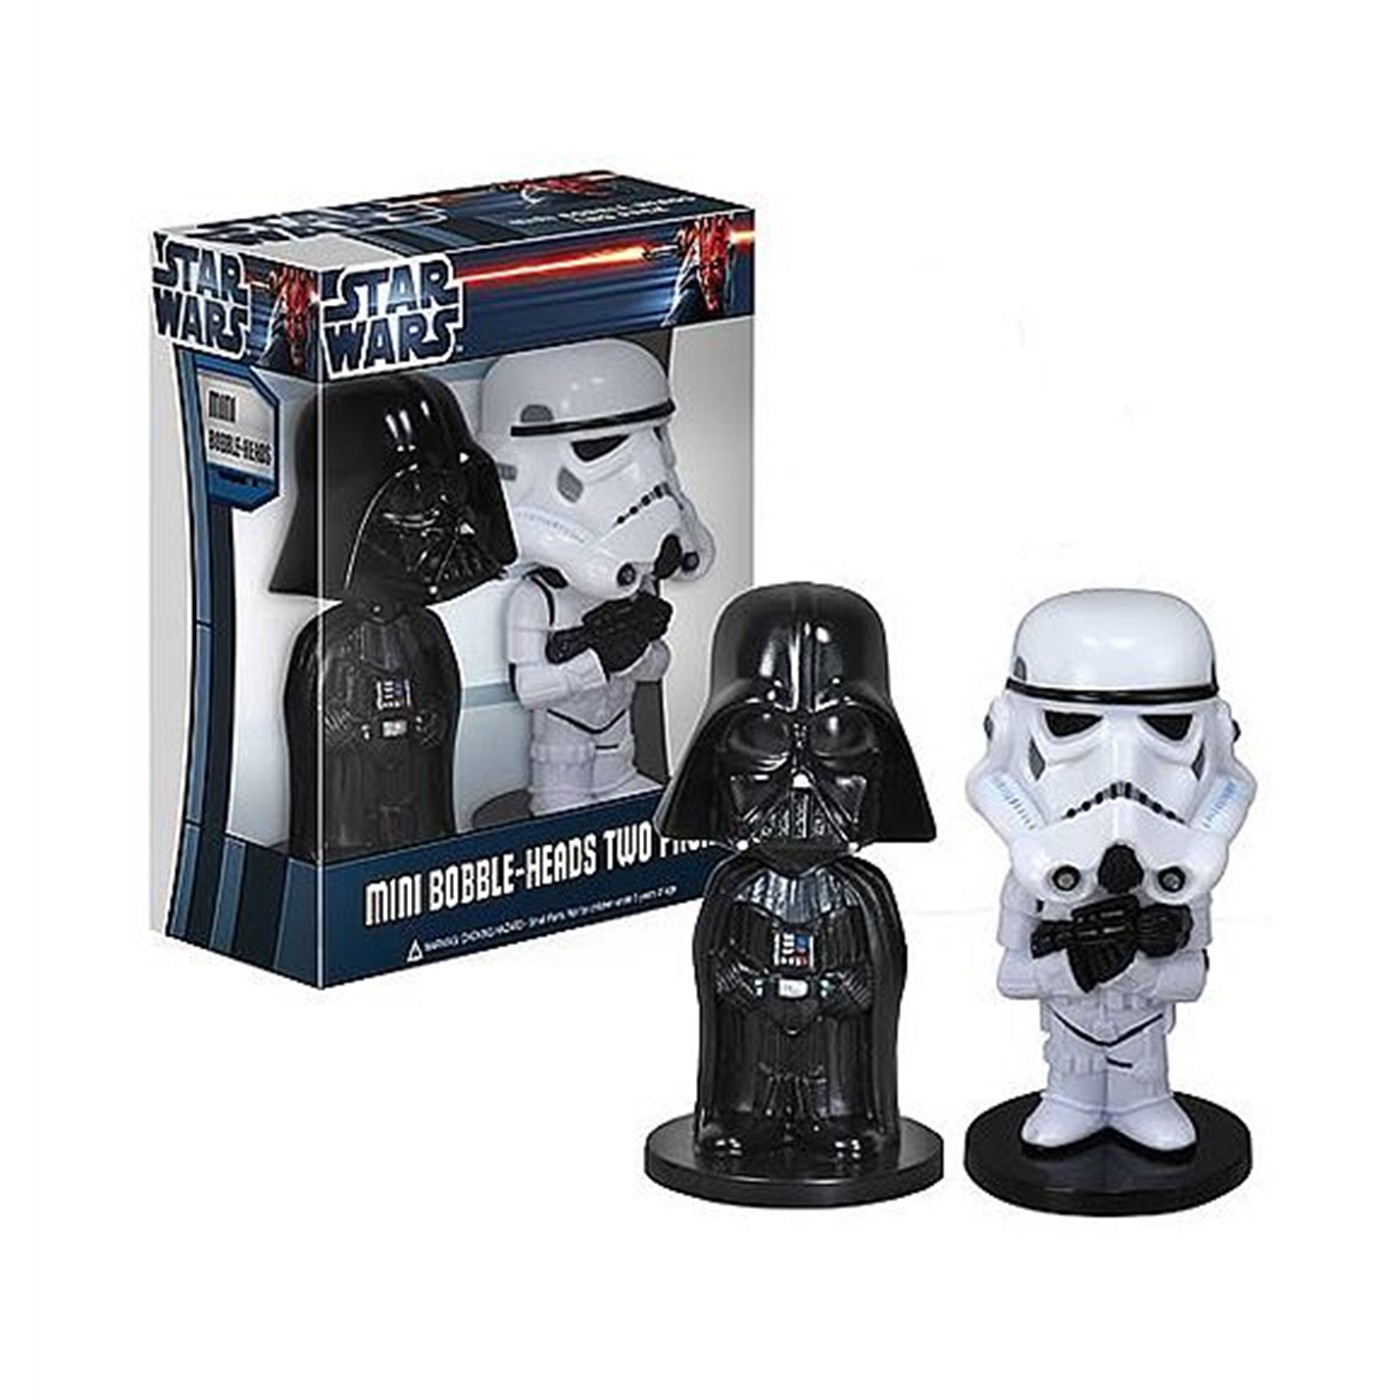 Darth Vader & Stormtrooper Mini Wacky Wobbler Set